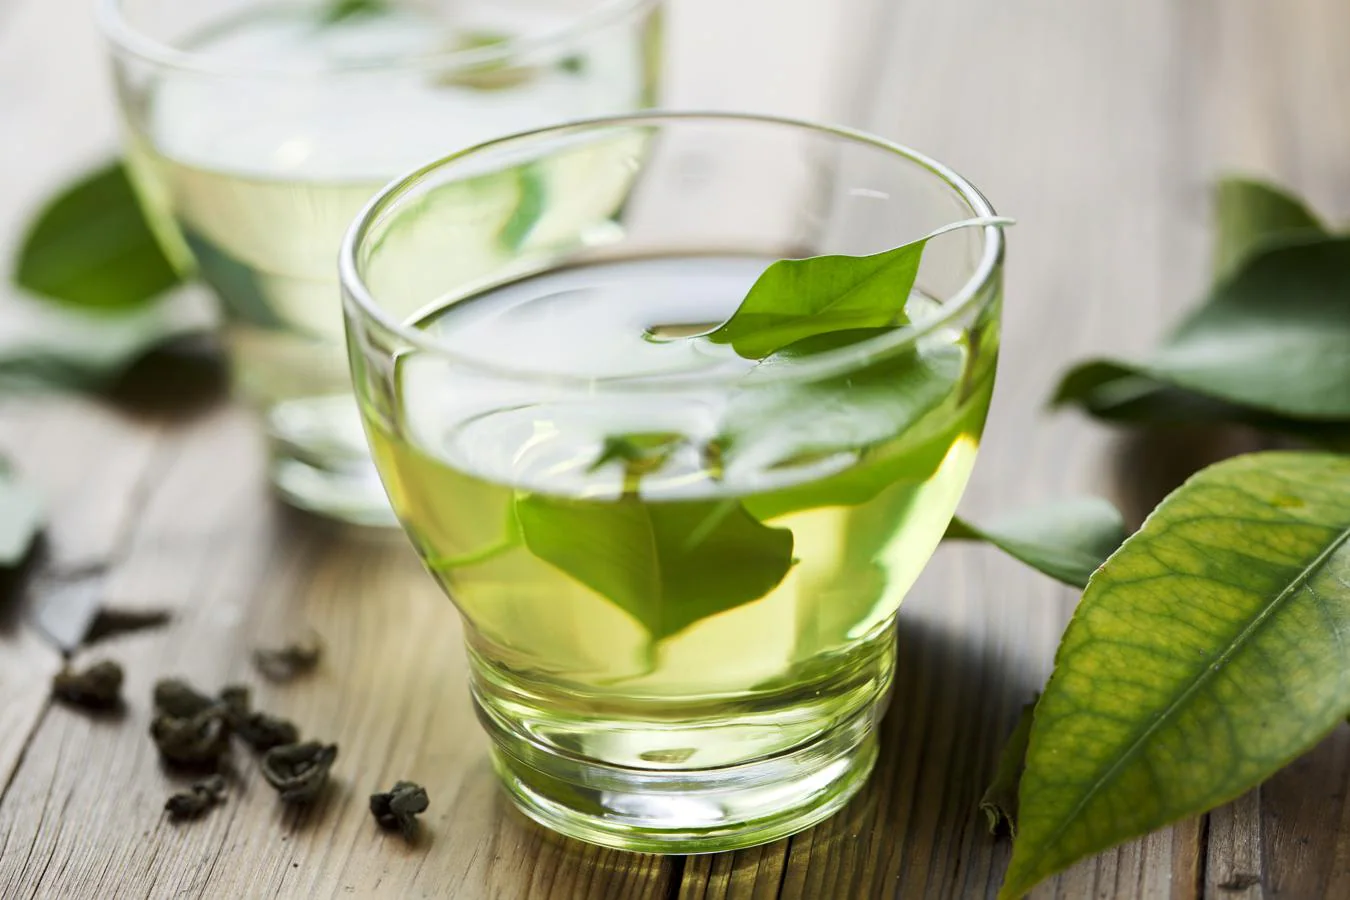 Té verde. Una taza de té verde tiene unos 30-40 mg de cafeína (teína), aproximadamente entre un tercio y una quinta parte que el café, pero puede hacernos efecto si no estamos muy habituados a la cafeína. Uno de sus compuestos muy interesantes es la epigalocatequina galato (EGCG). El té verde japonés siempre tiene más que los tés chinos, siendo el mejor el té verde japonés Sencha, infusionando a 95ºC. Si lo infusionas durante 8-10 minutos obtienes 5 veces más cantidad de EGCG que si lo infusionas de 2 a 5 minutos. El té verde también tiene L-teanina, un aminoácido que aumenta la concentración con una relajación que no invita al sueño.